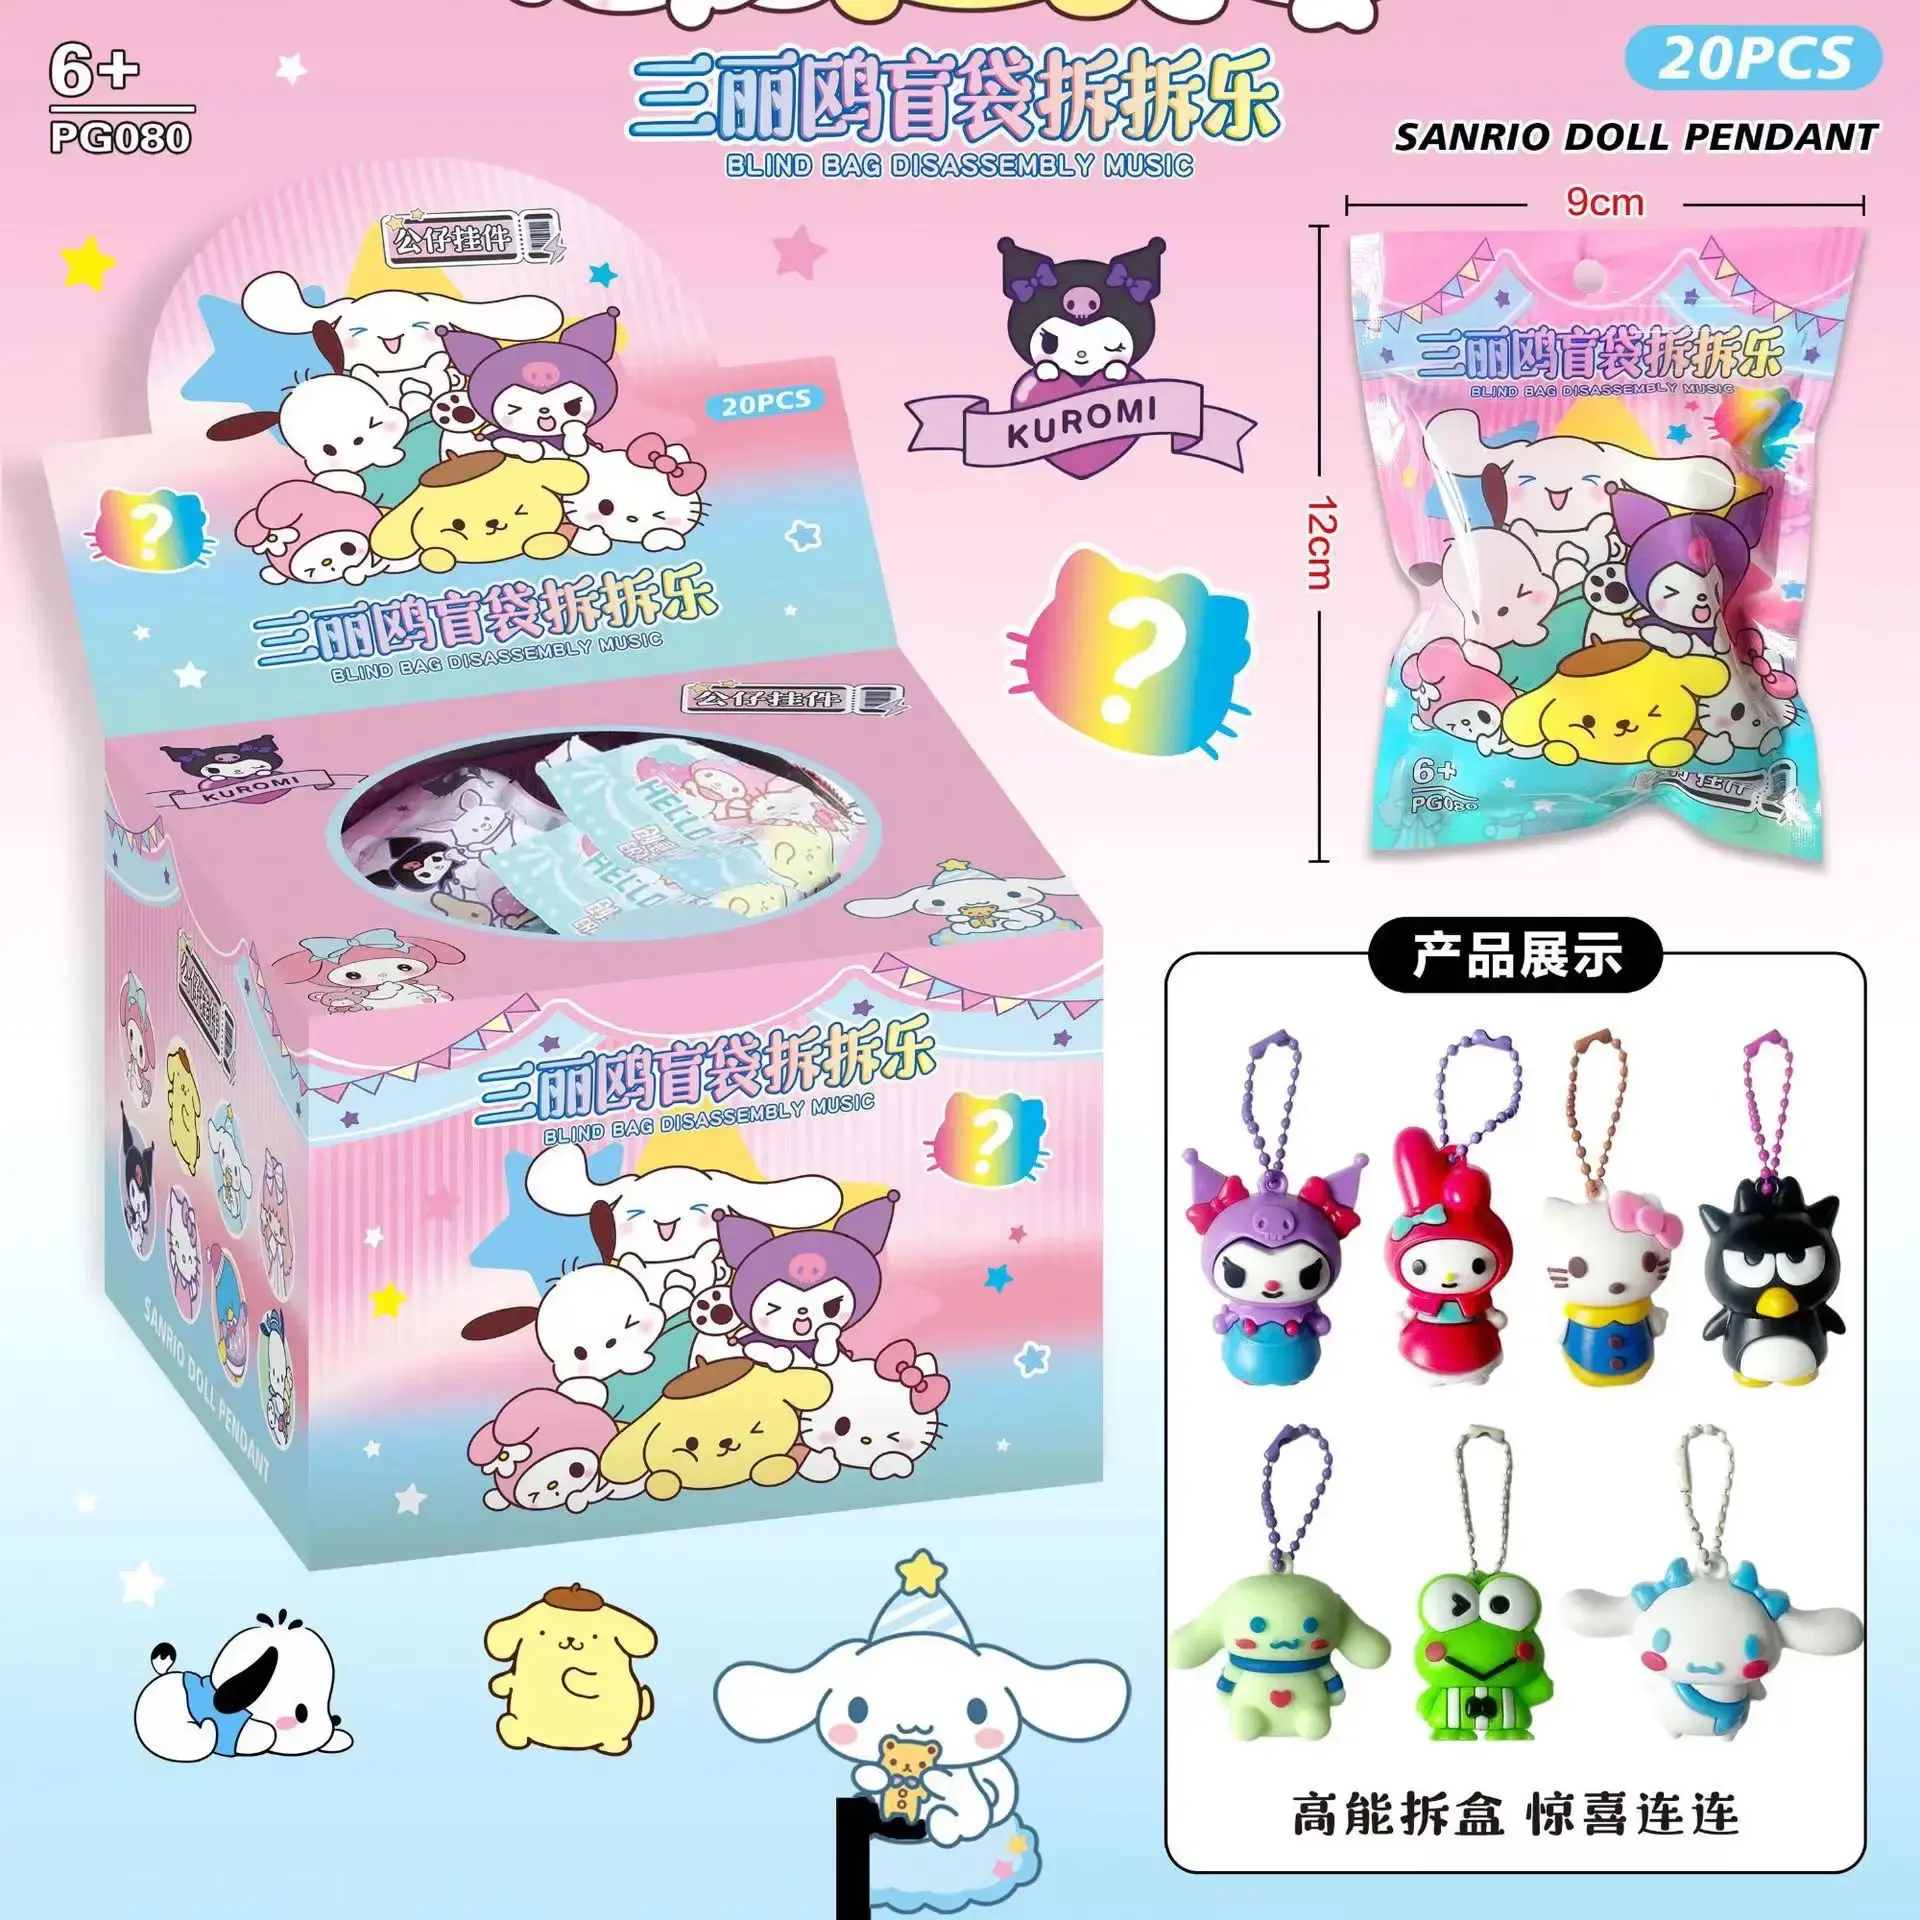 Nouveau Sanrio Anime boîte aveugle démontage heureux Surprise boîte aveugle porte-clés mignon poupée pendentif enfants figurines petit cadeau